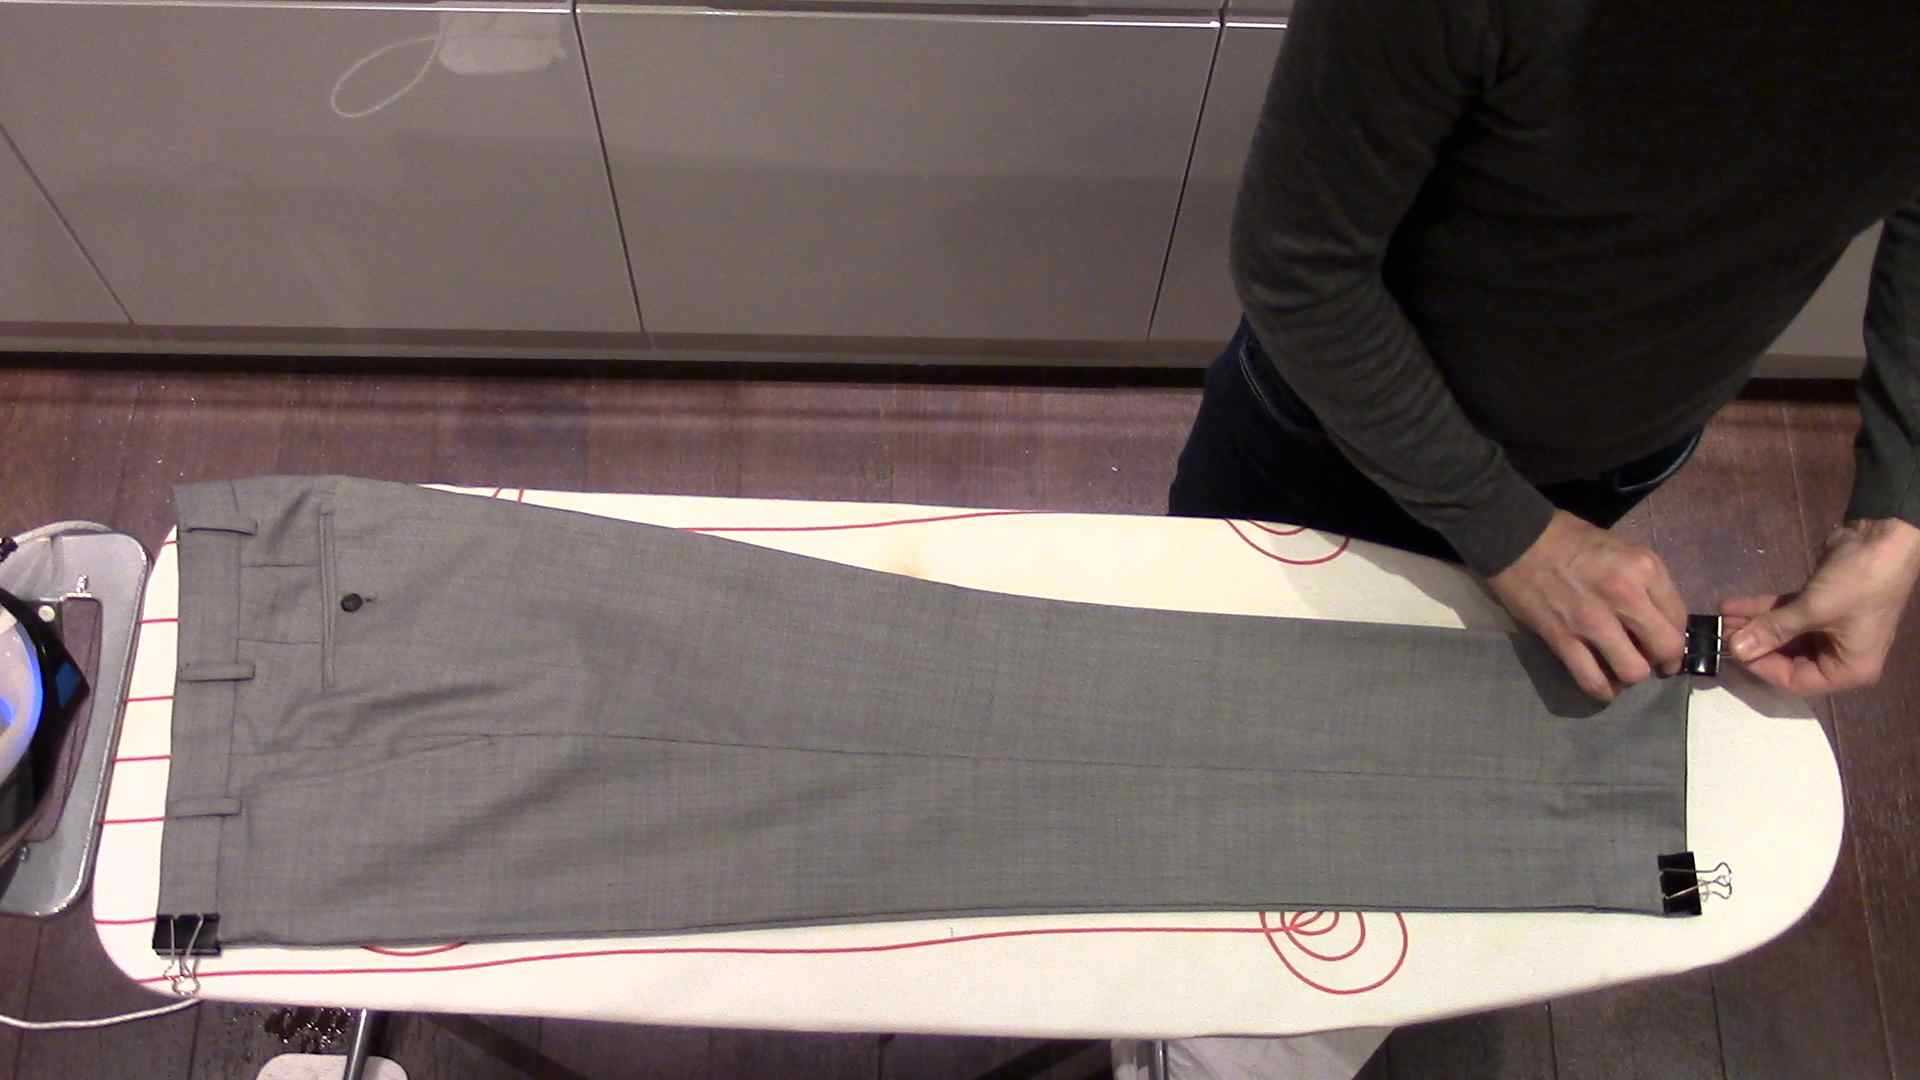 Нужно ли гладить постельное белье после стирки: зачем, как правильно и при этом быстро это сделать утюгом на гладильной доске или при помощи отпаривателя?